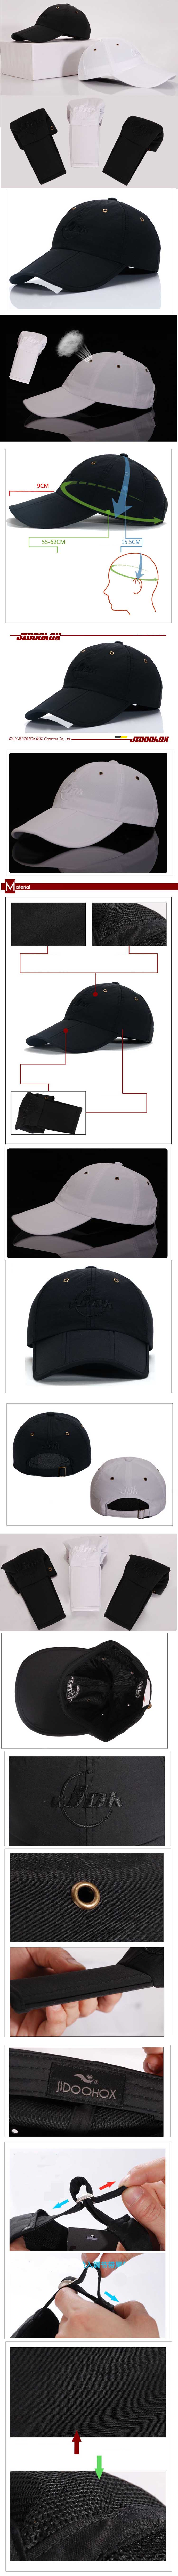 jual topi pria branded model bisa dilipat dan nyaman dipakai, temukan koleksi lengkap topi pria branded di sini